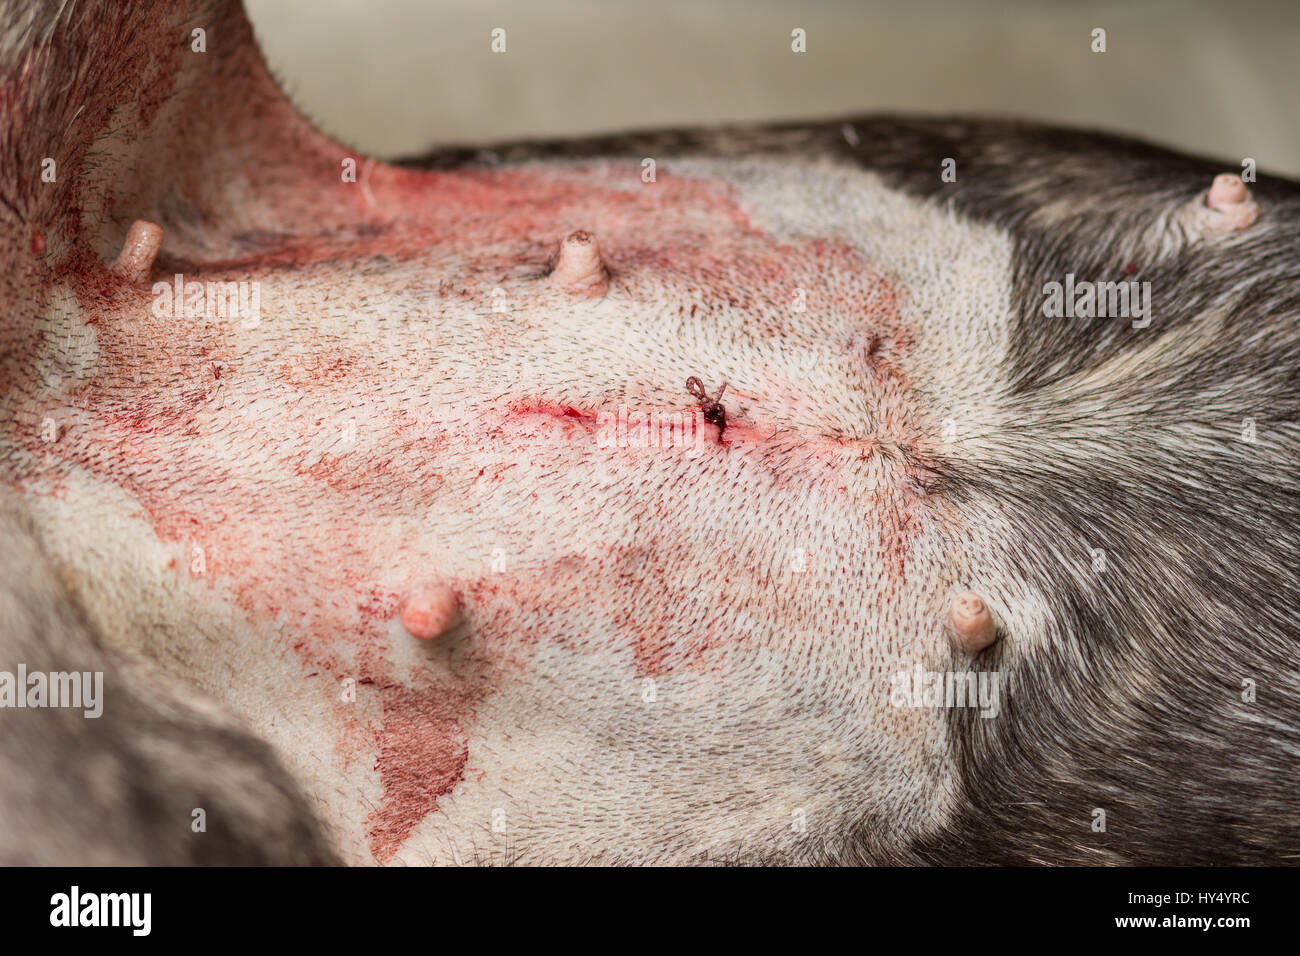 Veterinär, Sterilisation eines Hundes der Rasse französische Bulldogge, Bauch am Ende der Operation eine genähte Haut mit einem abschließenden Knoten Stockfoto